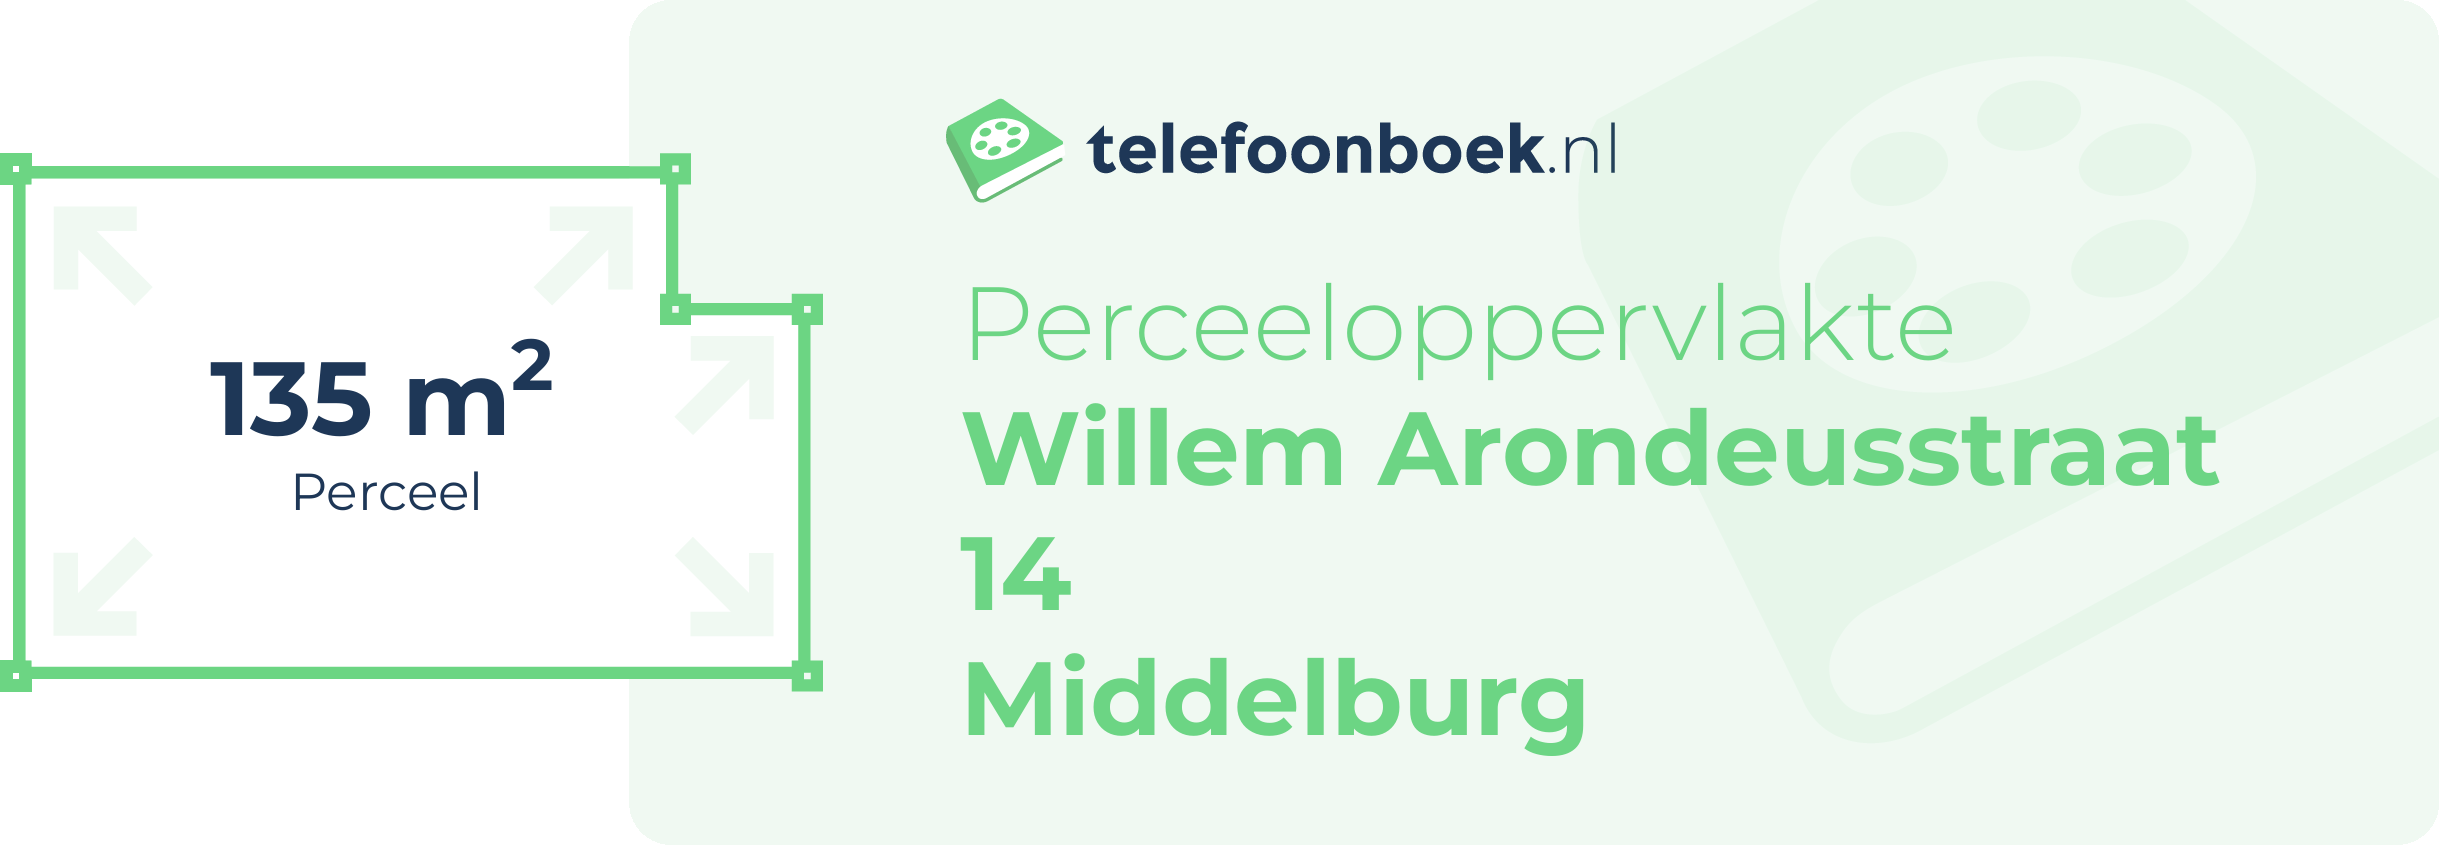 Perceeloppervlakte Willem Arondeusstraat 14 Middelburg